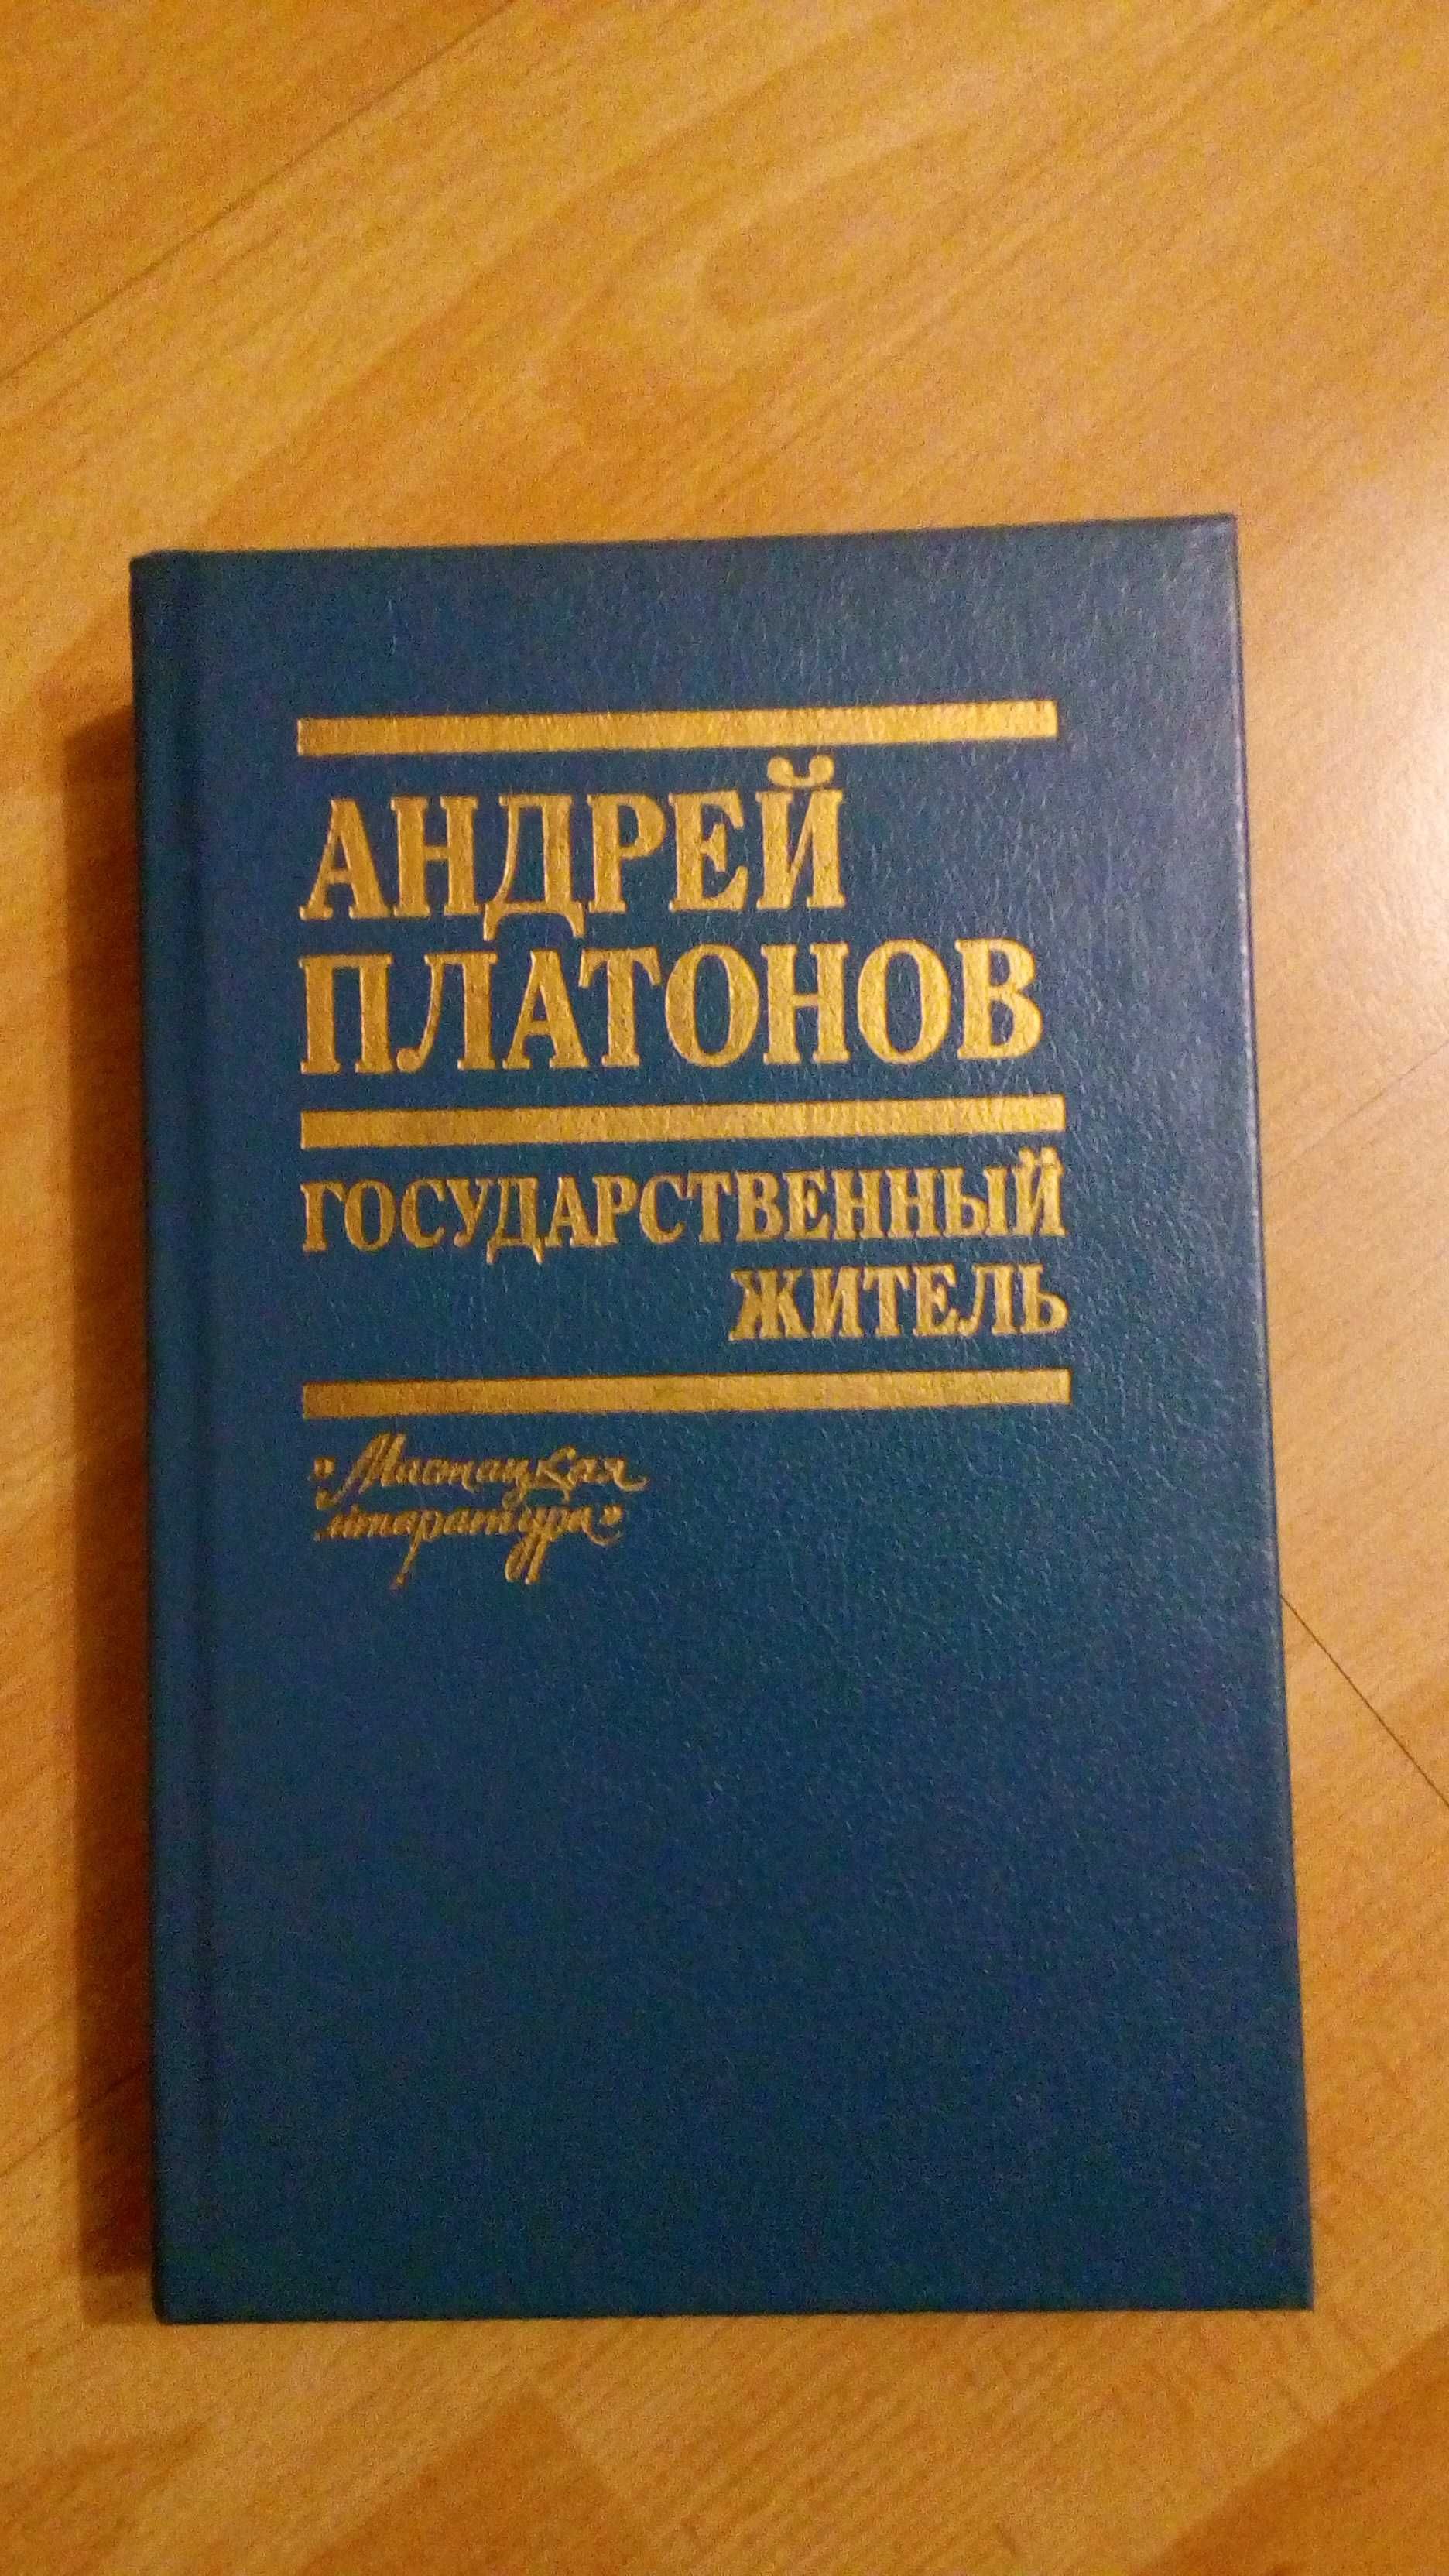 Продам книгу Андрей Платонов "Государственный деятель".